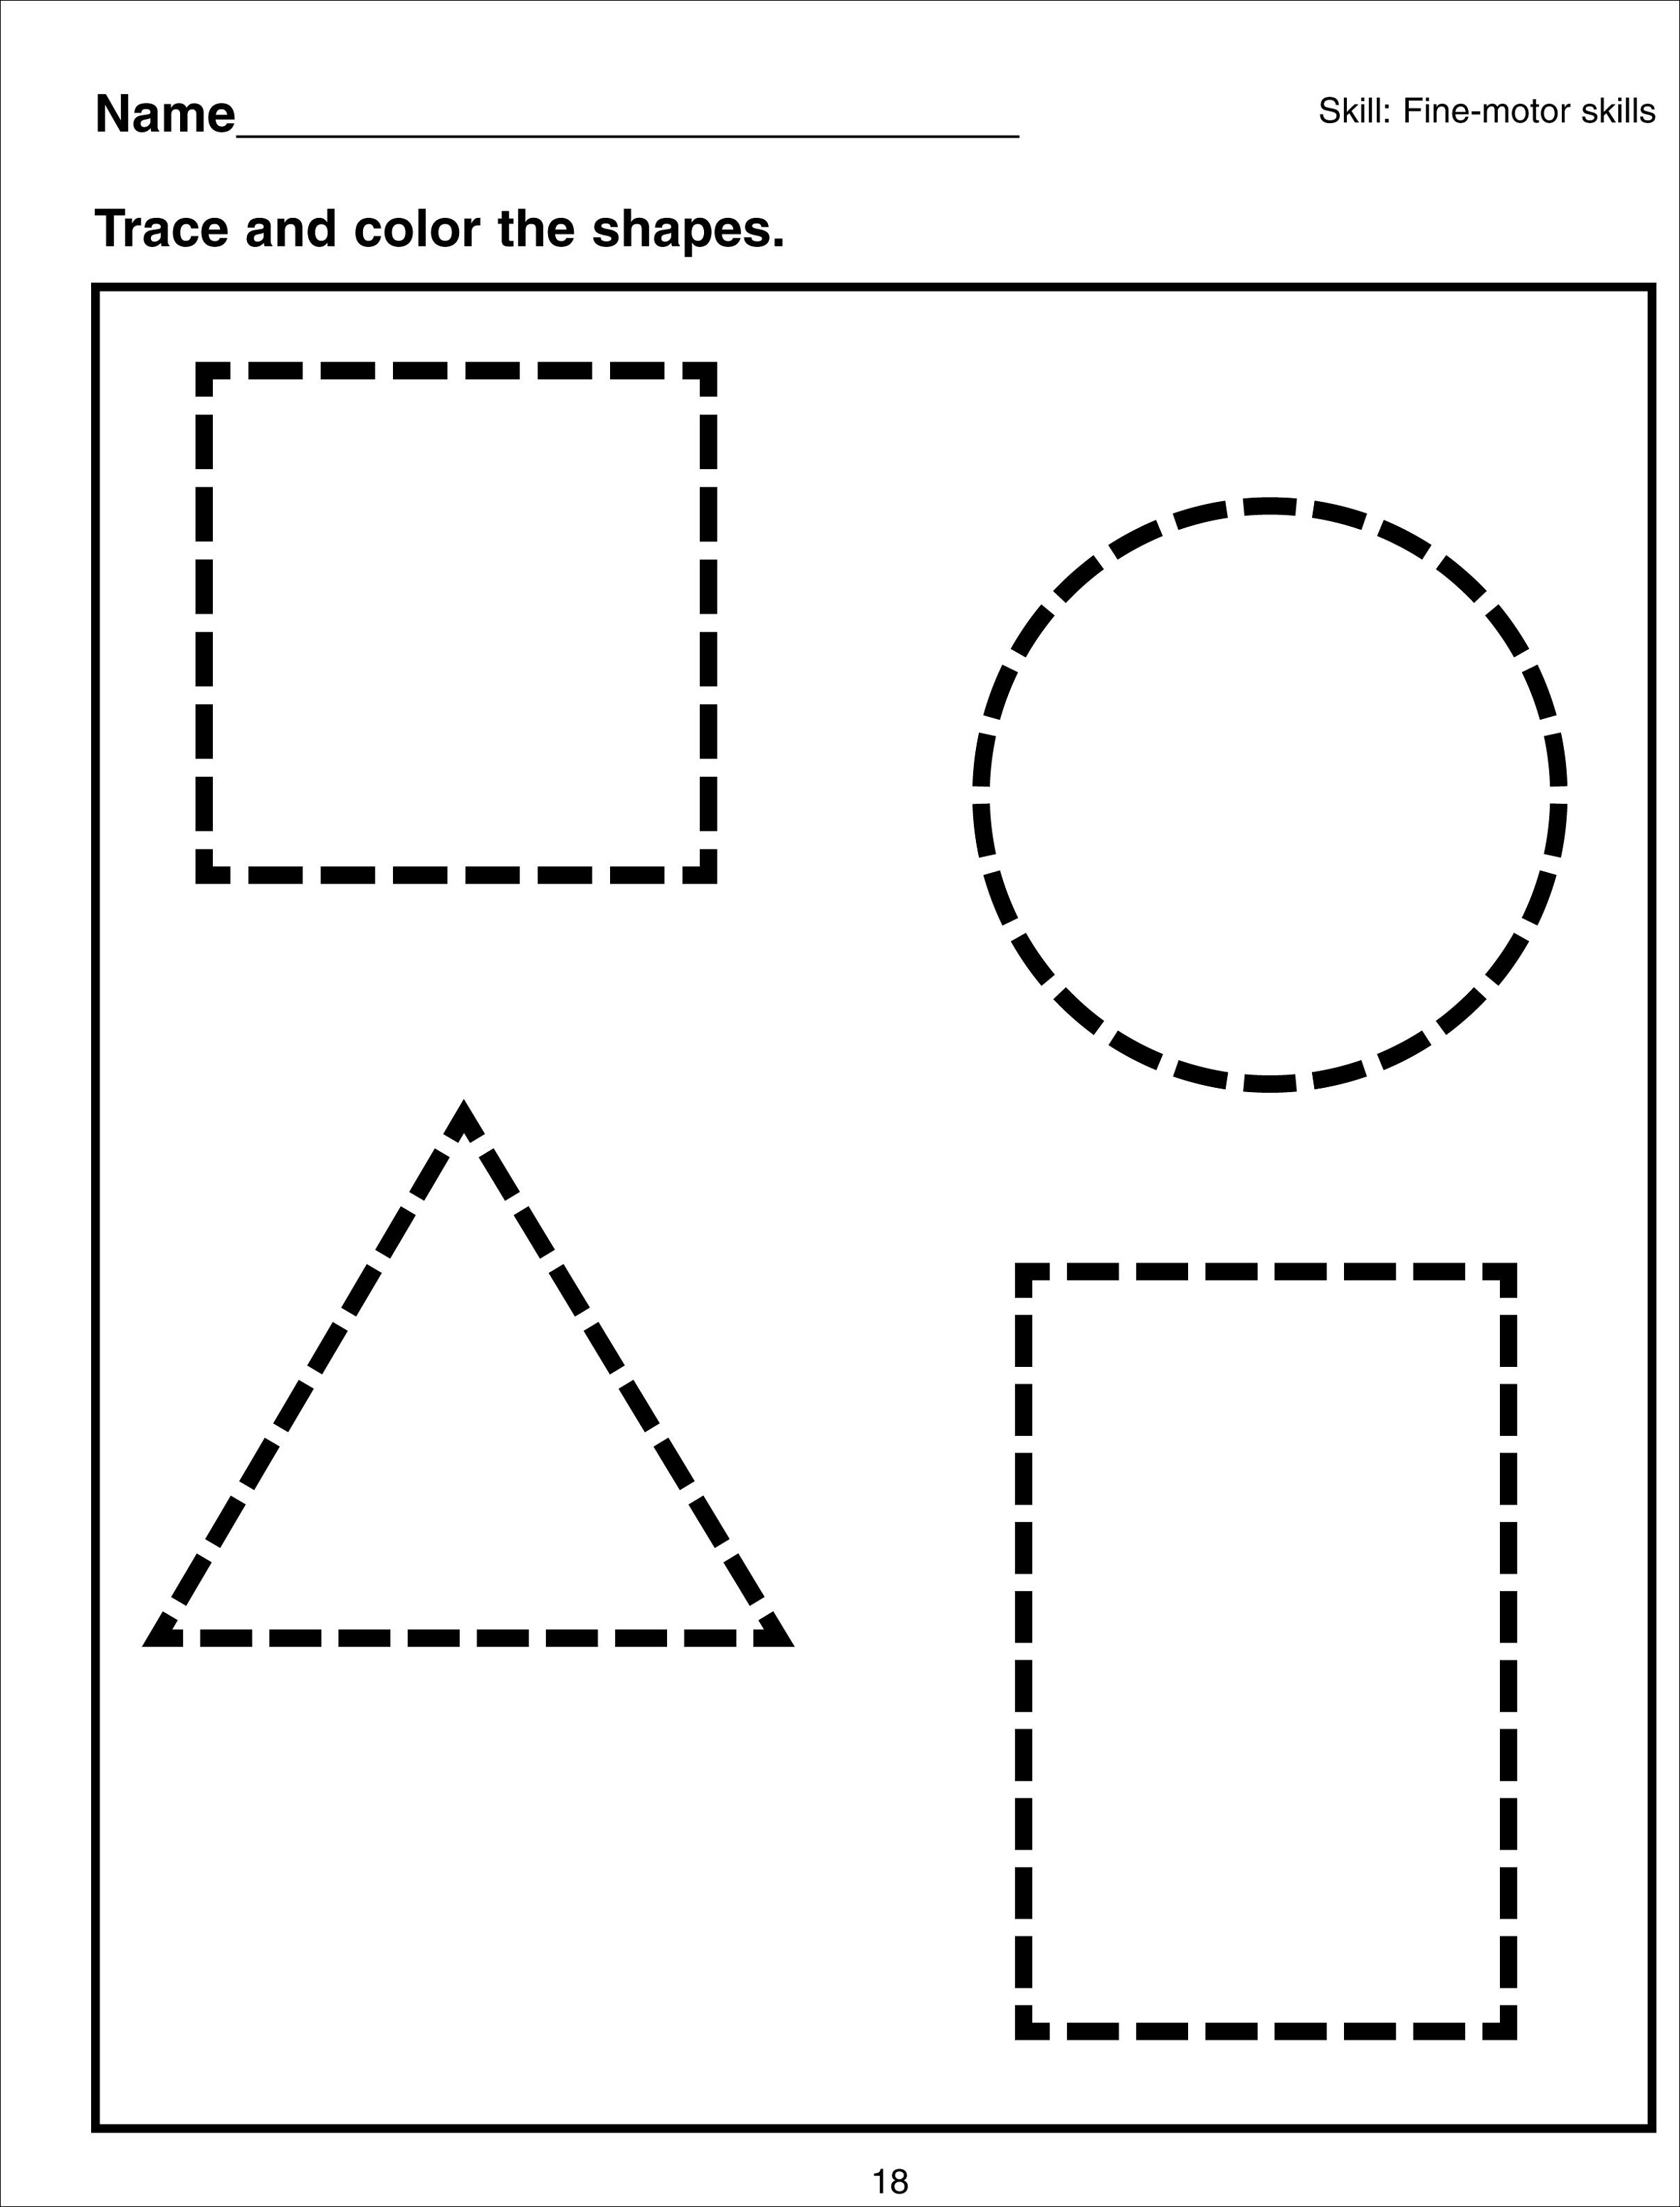 basic-shapes-worksheets-simple-jpg-2360-3100-geometri-okul-ncesi